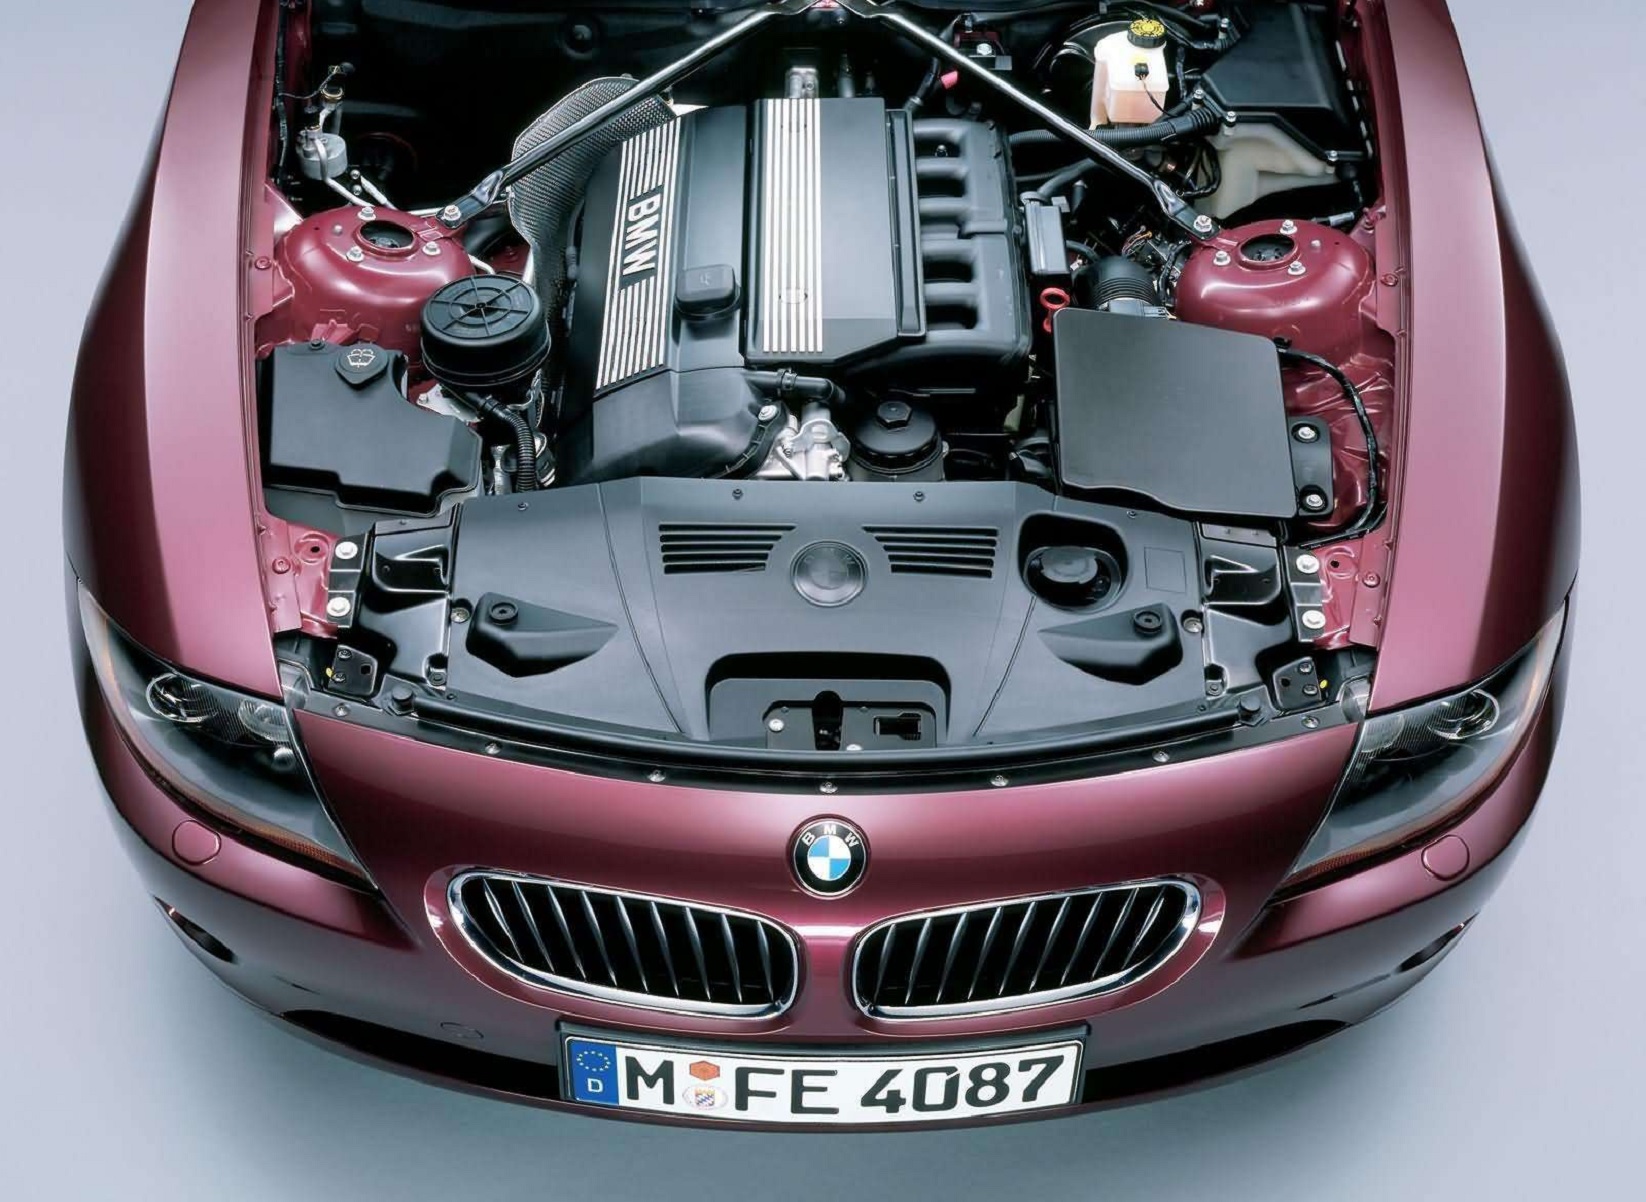 Двигатель на автомобиле является. BMW z4 двигатель. BMW z4 капот. BMW z4 подкапотка. БМВ z4 моторный отсек.